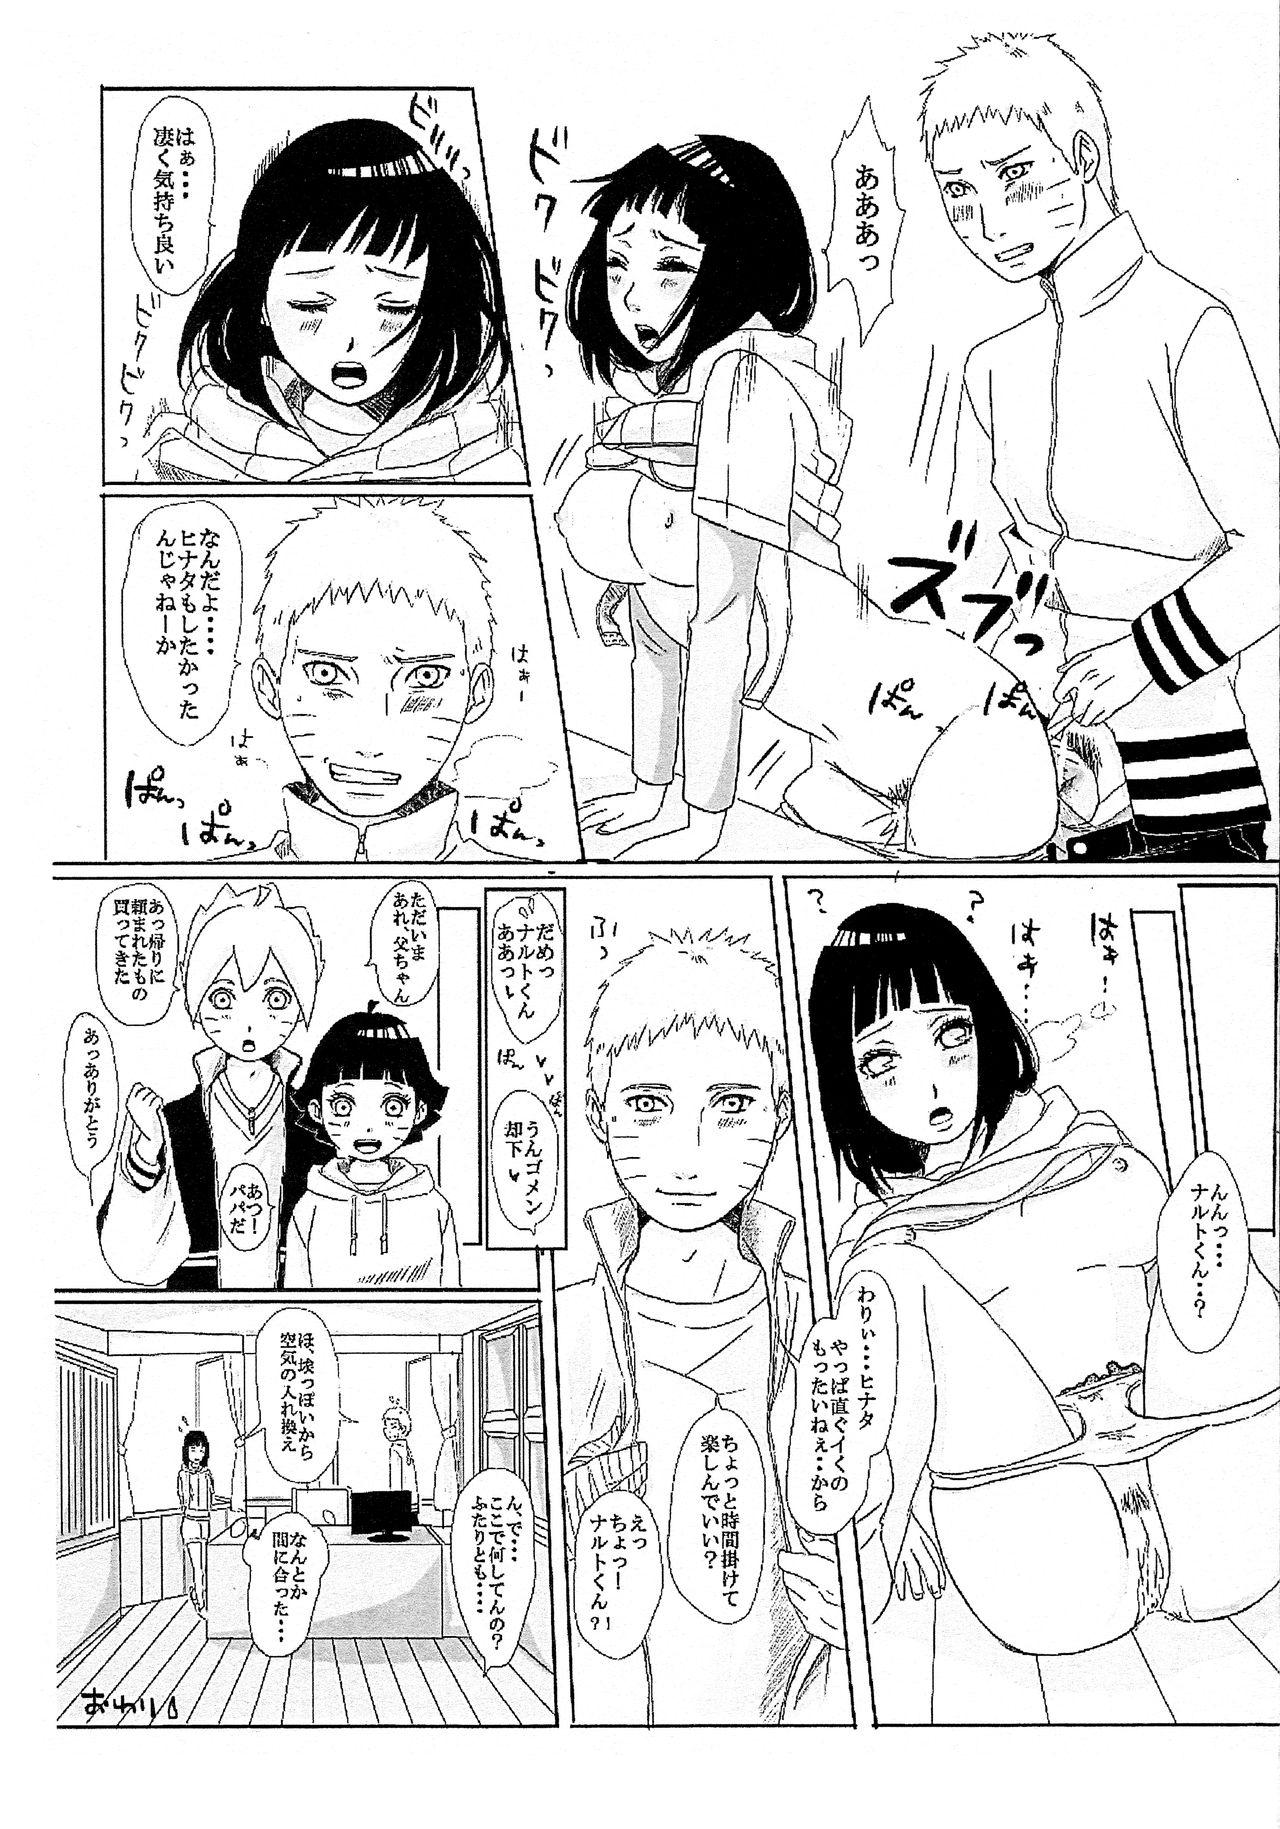 Flashing Kodomo ga rusu no yoru ni... - Naruto Boruto Step Dad - Page 41